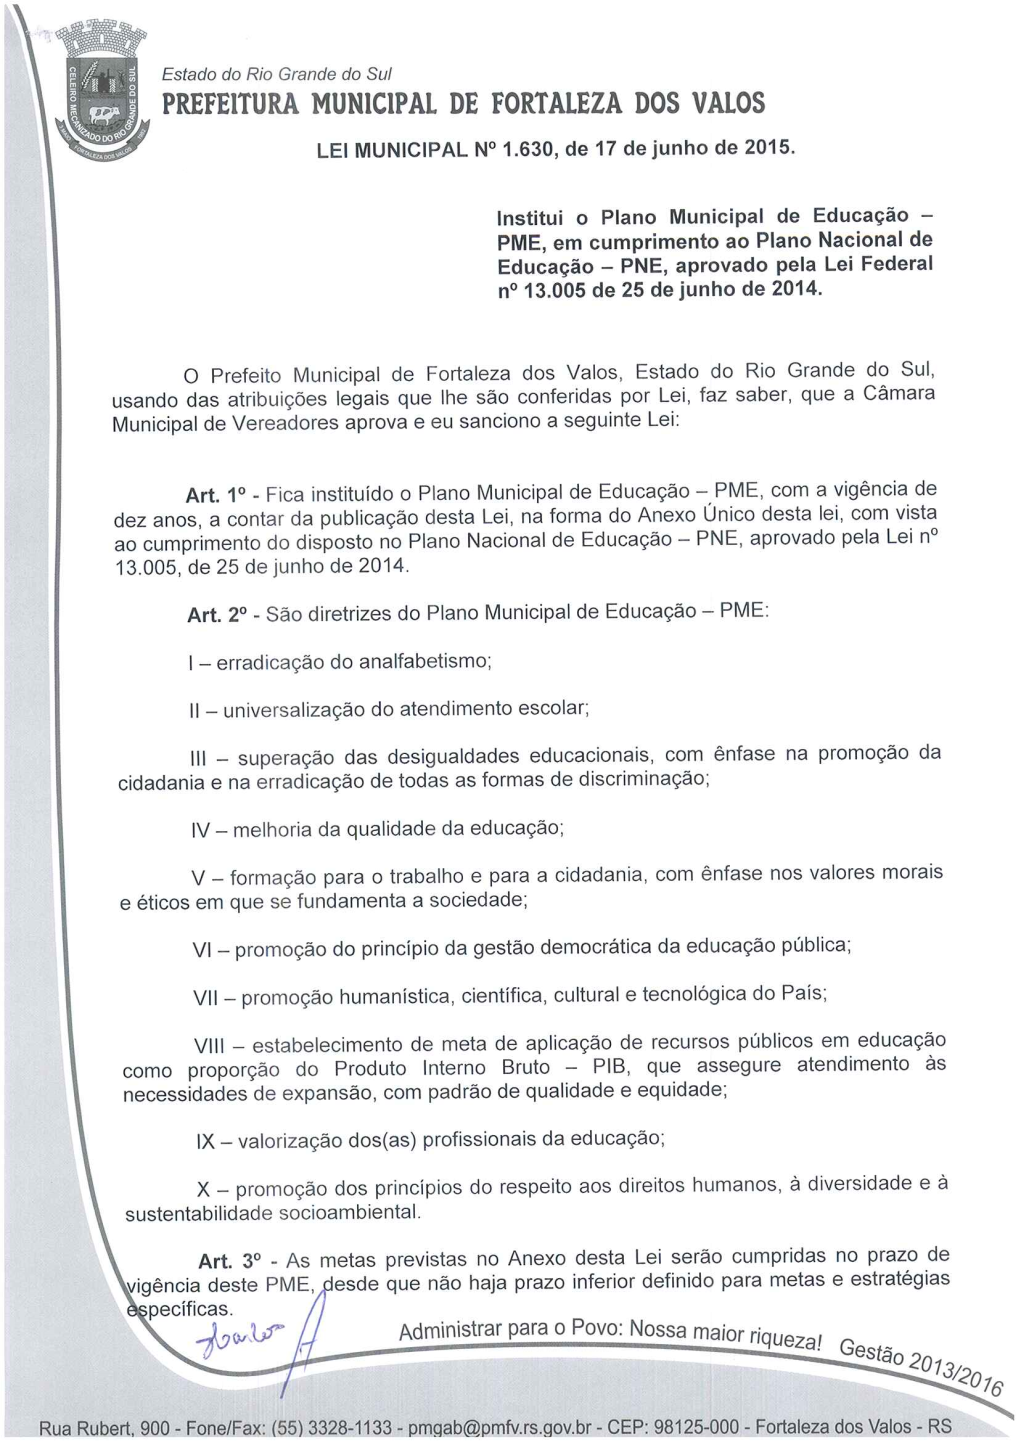 Prefeitura Municipal Secretaria Municipal De Educação Cultura E Desporto Fortaleza Dos Valos-Rs Plano Municipal De Educação 2015 a 2025